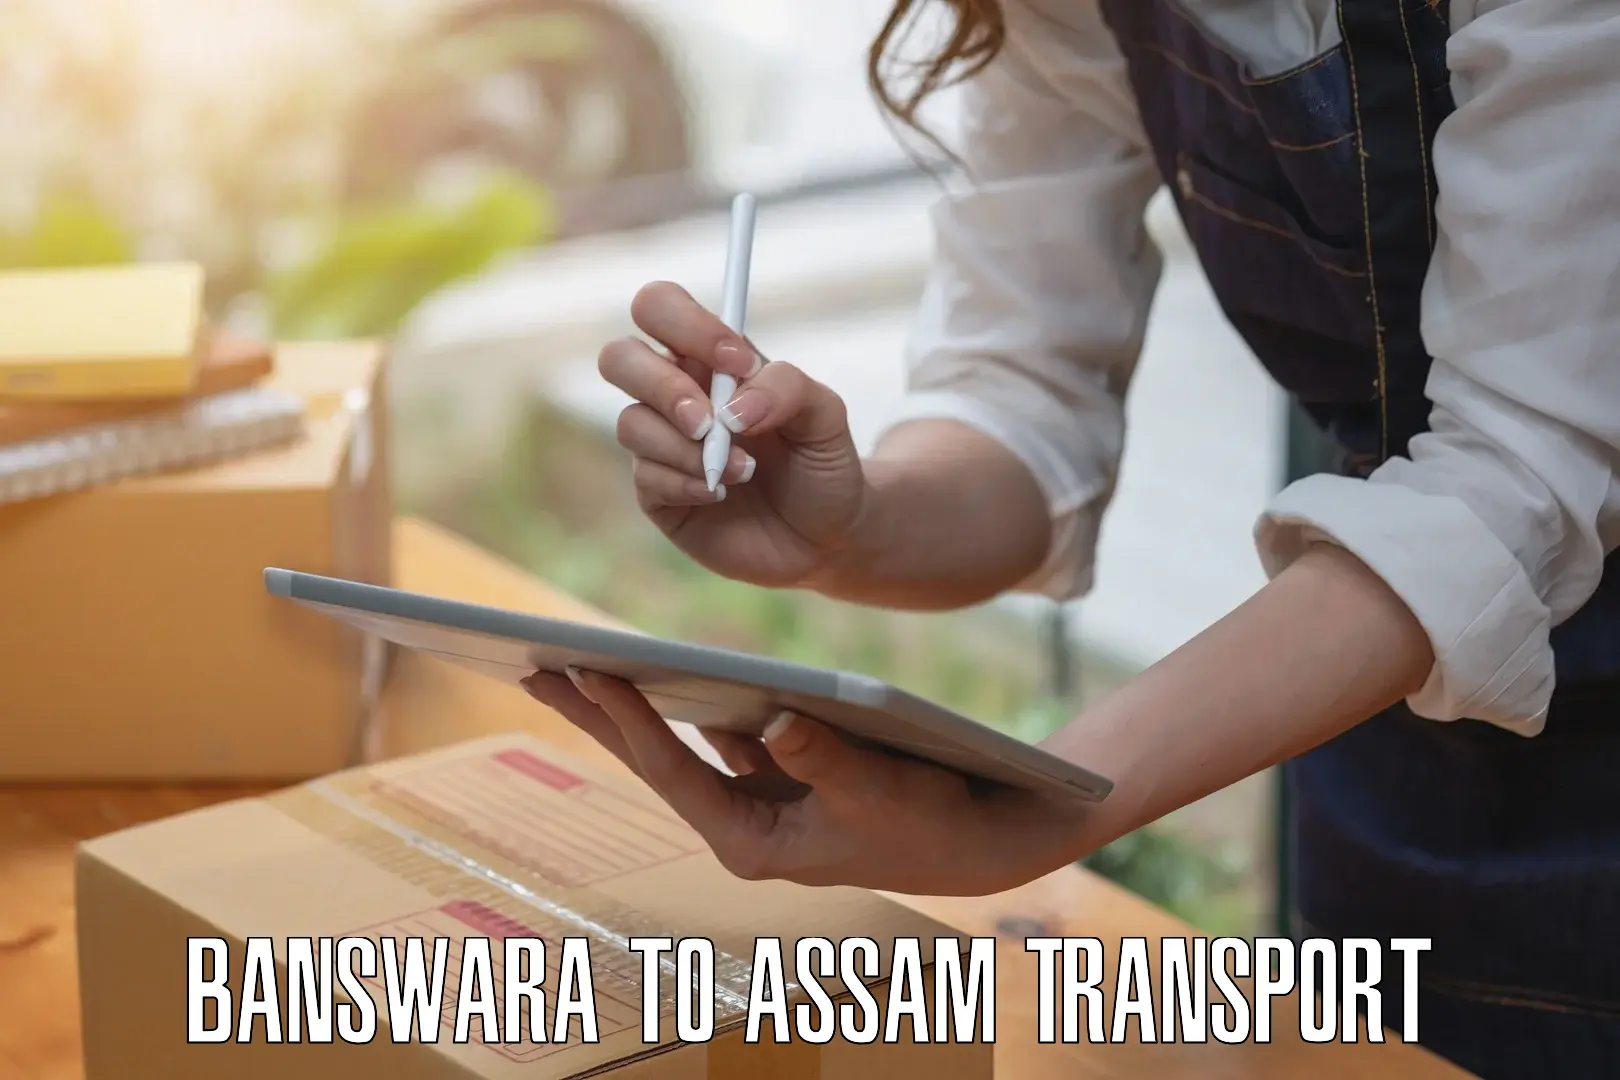 Furniture transport service Banswara to Kokrajhar